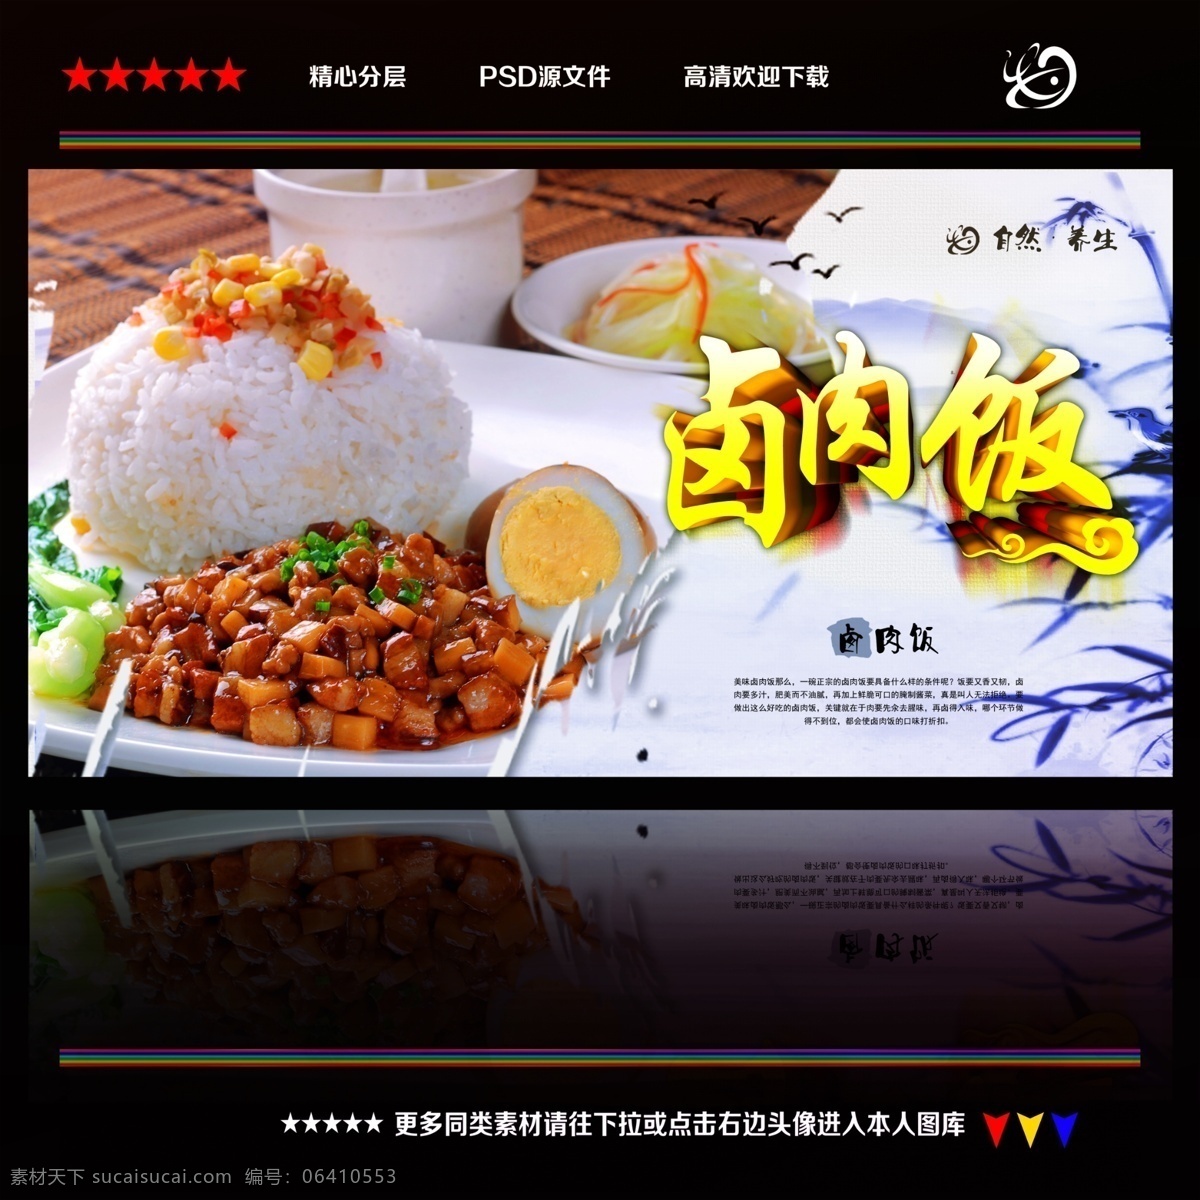 卤肉 饭 海报 广告 菜单 食物 卤肉饭 餐饮 美食 台湾料理 灯箱广告 传单 背景墙 卤肉饭海报